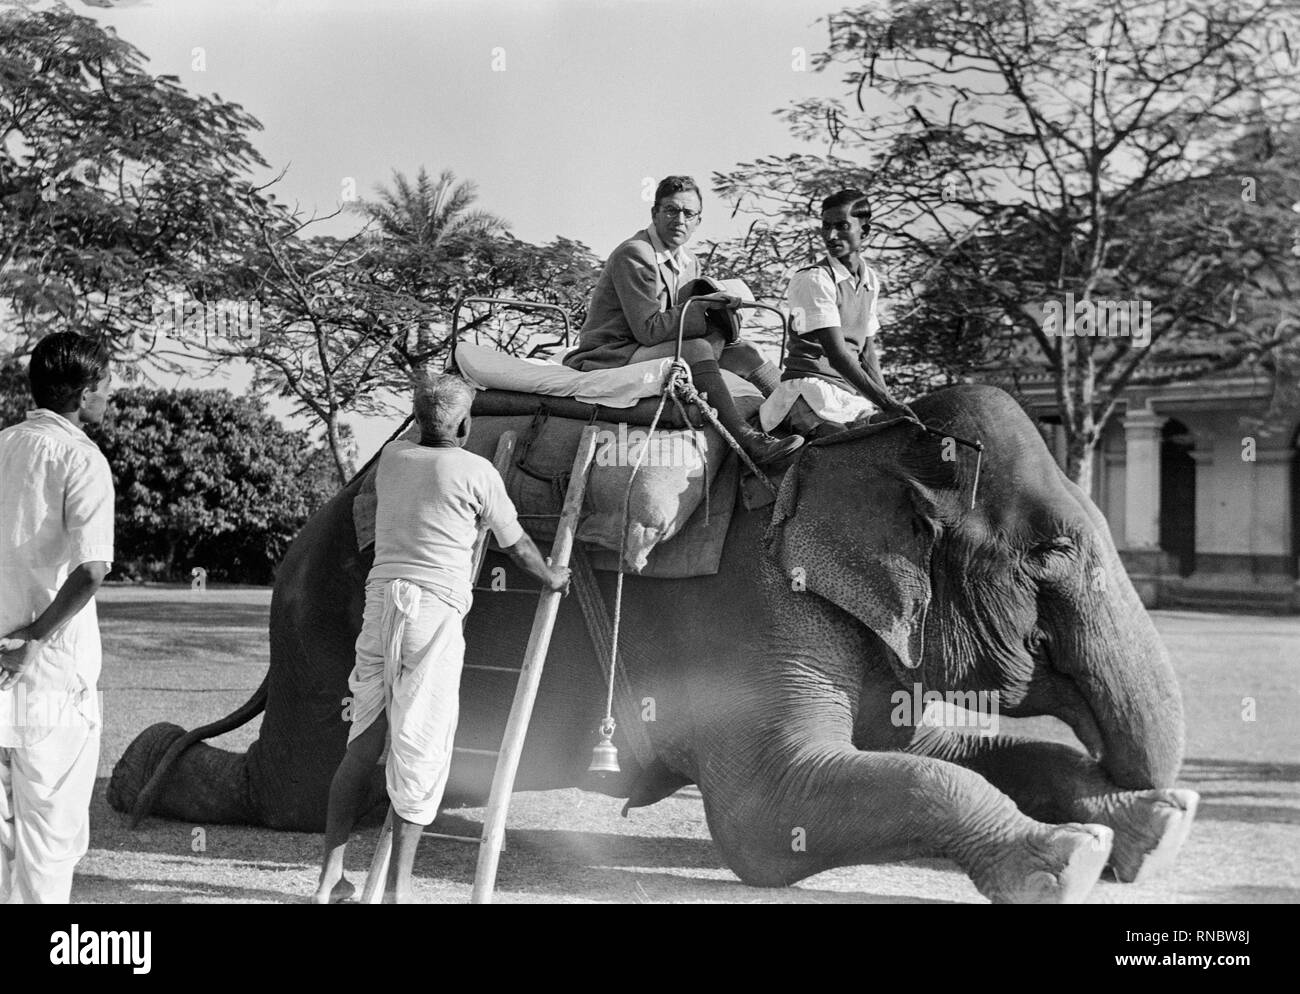 1930 Photographie noir et blanc montrant un homme européen blanc à monter sur un éléphant pour une balade. Photo prise en Inde. Banque D'Images